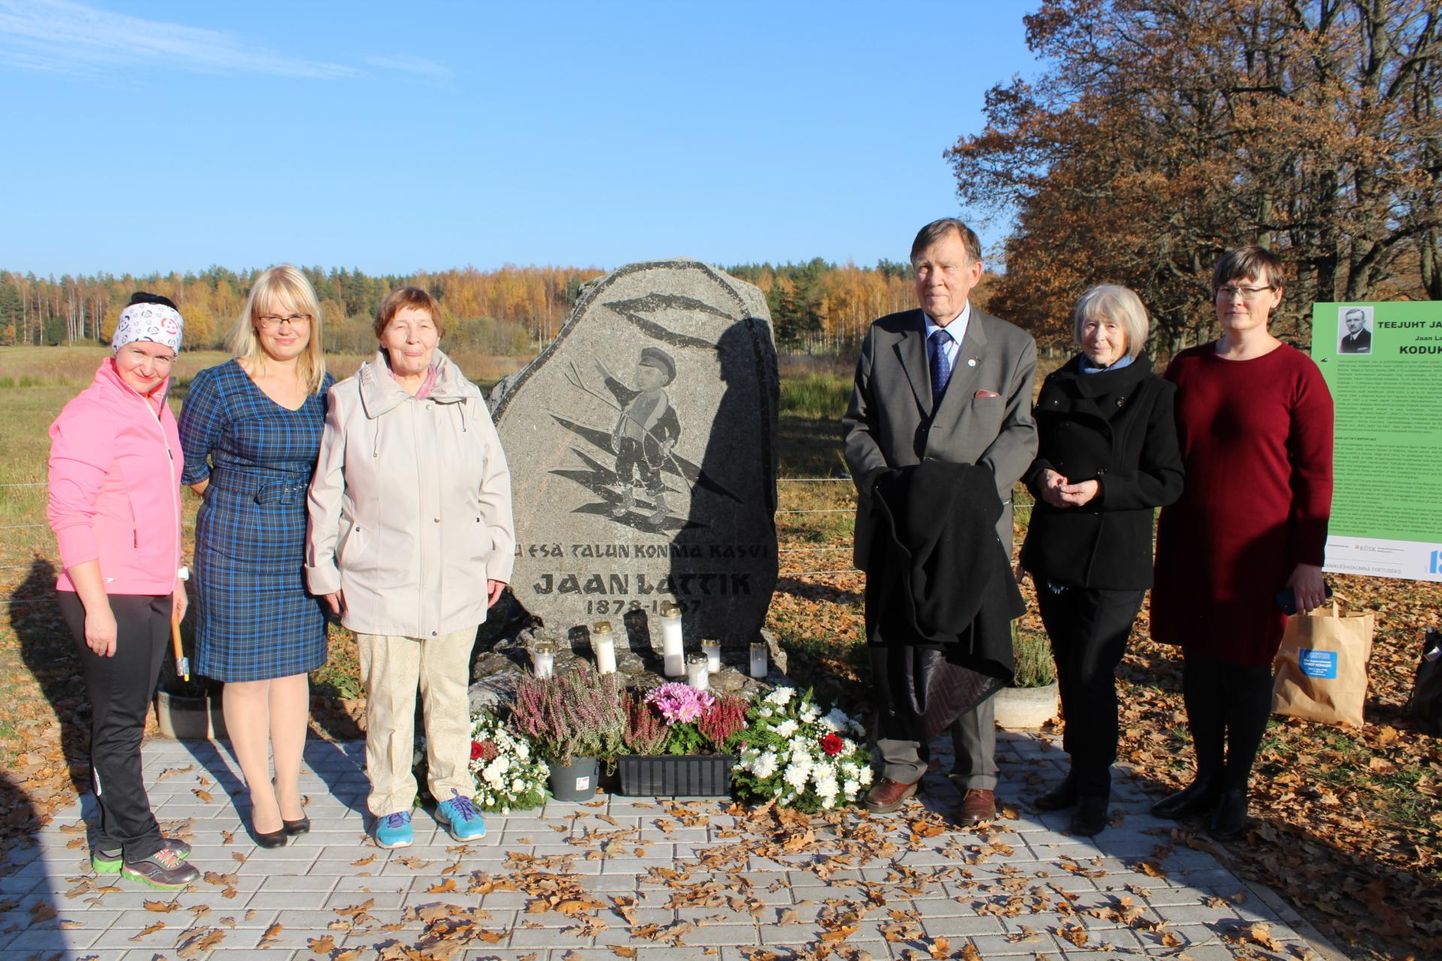 Jaan Lattikut meenutab tema sünnipaigas mälestuskivi. Selle juures seisavad Lüllemäe põhikooli direktor Jana Tiits (vasakult), Lüllemäe raamatukogu juhataja Triinu Rätsepp, Lattiku mälestuse hoidja Eha Kotov ning teisel pool kunagise presidendi järeltulija Matti Päts perega.